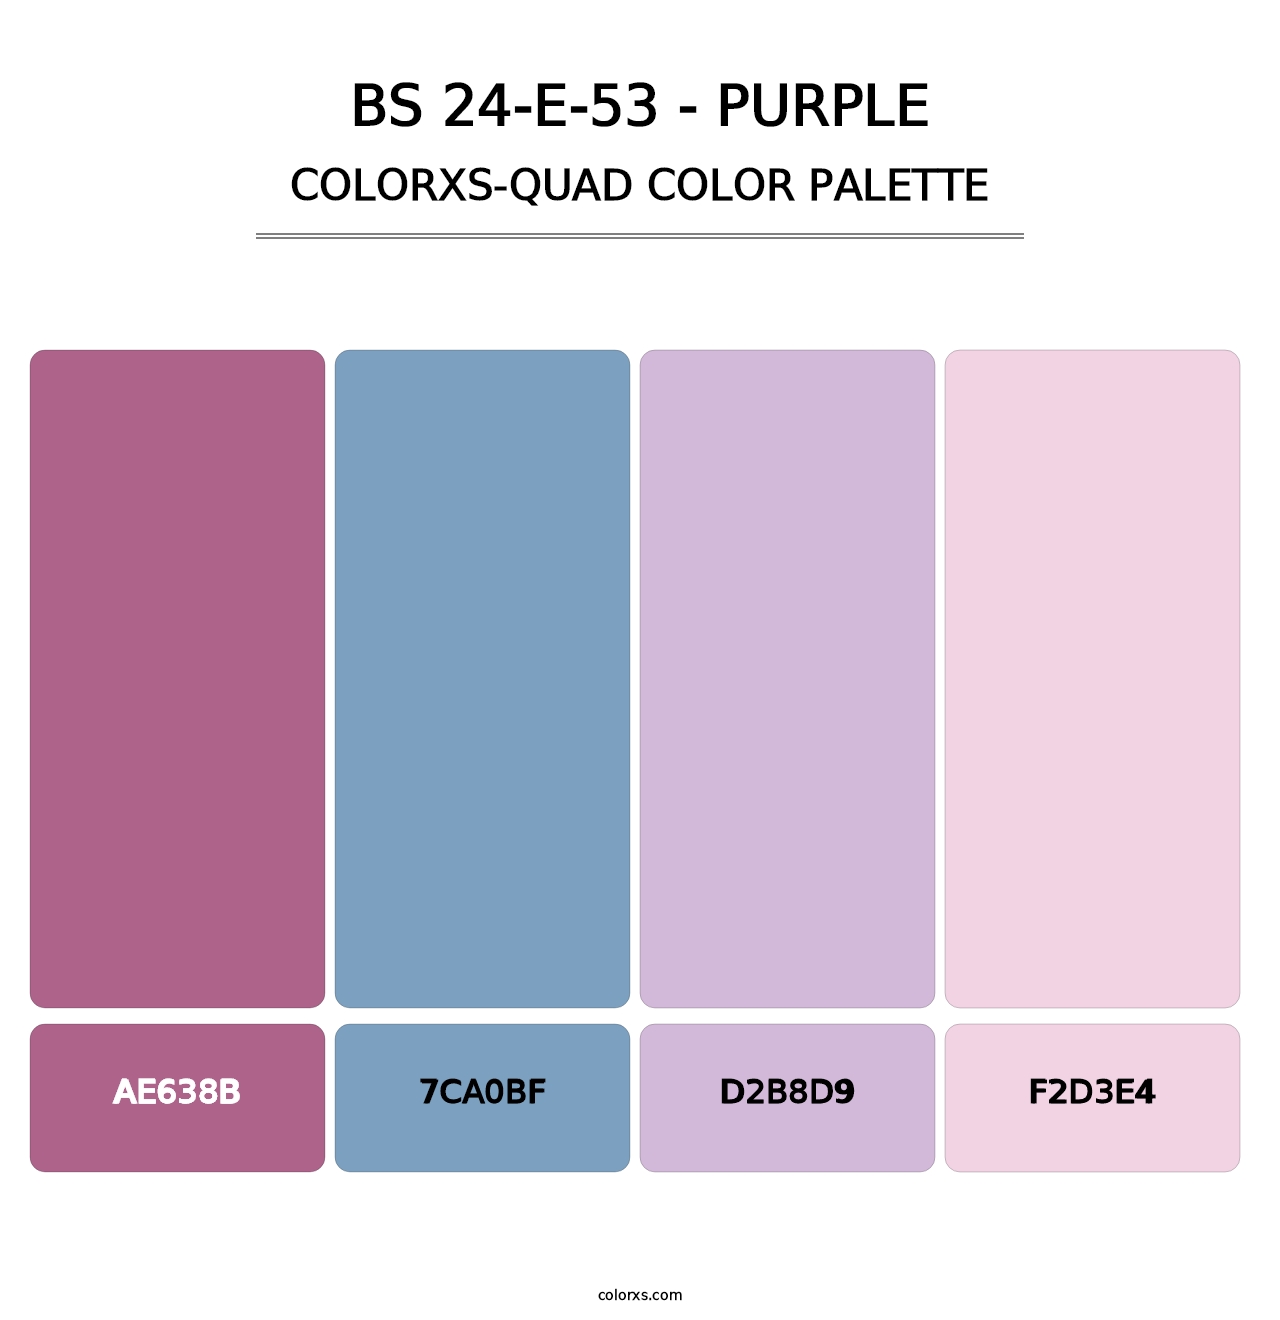 BS 24-E-53 - Purple - Colorxs Quad Palette